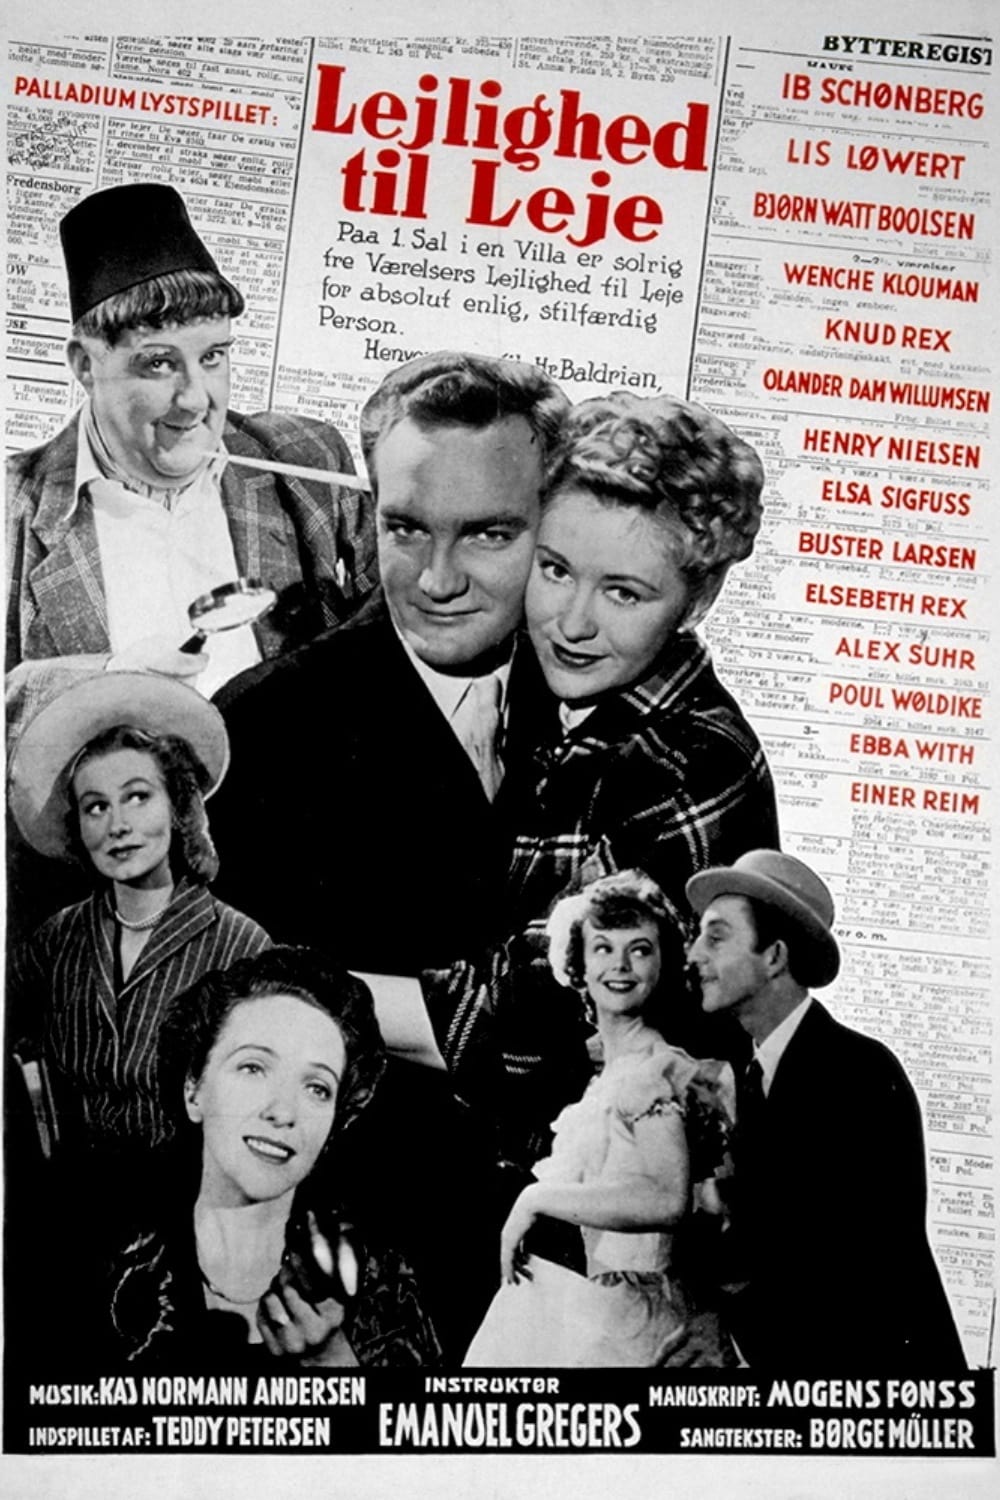 Lejlighed til leje (1949)